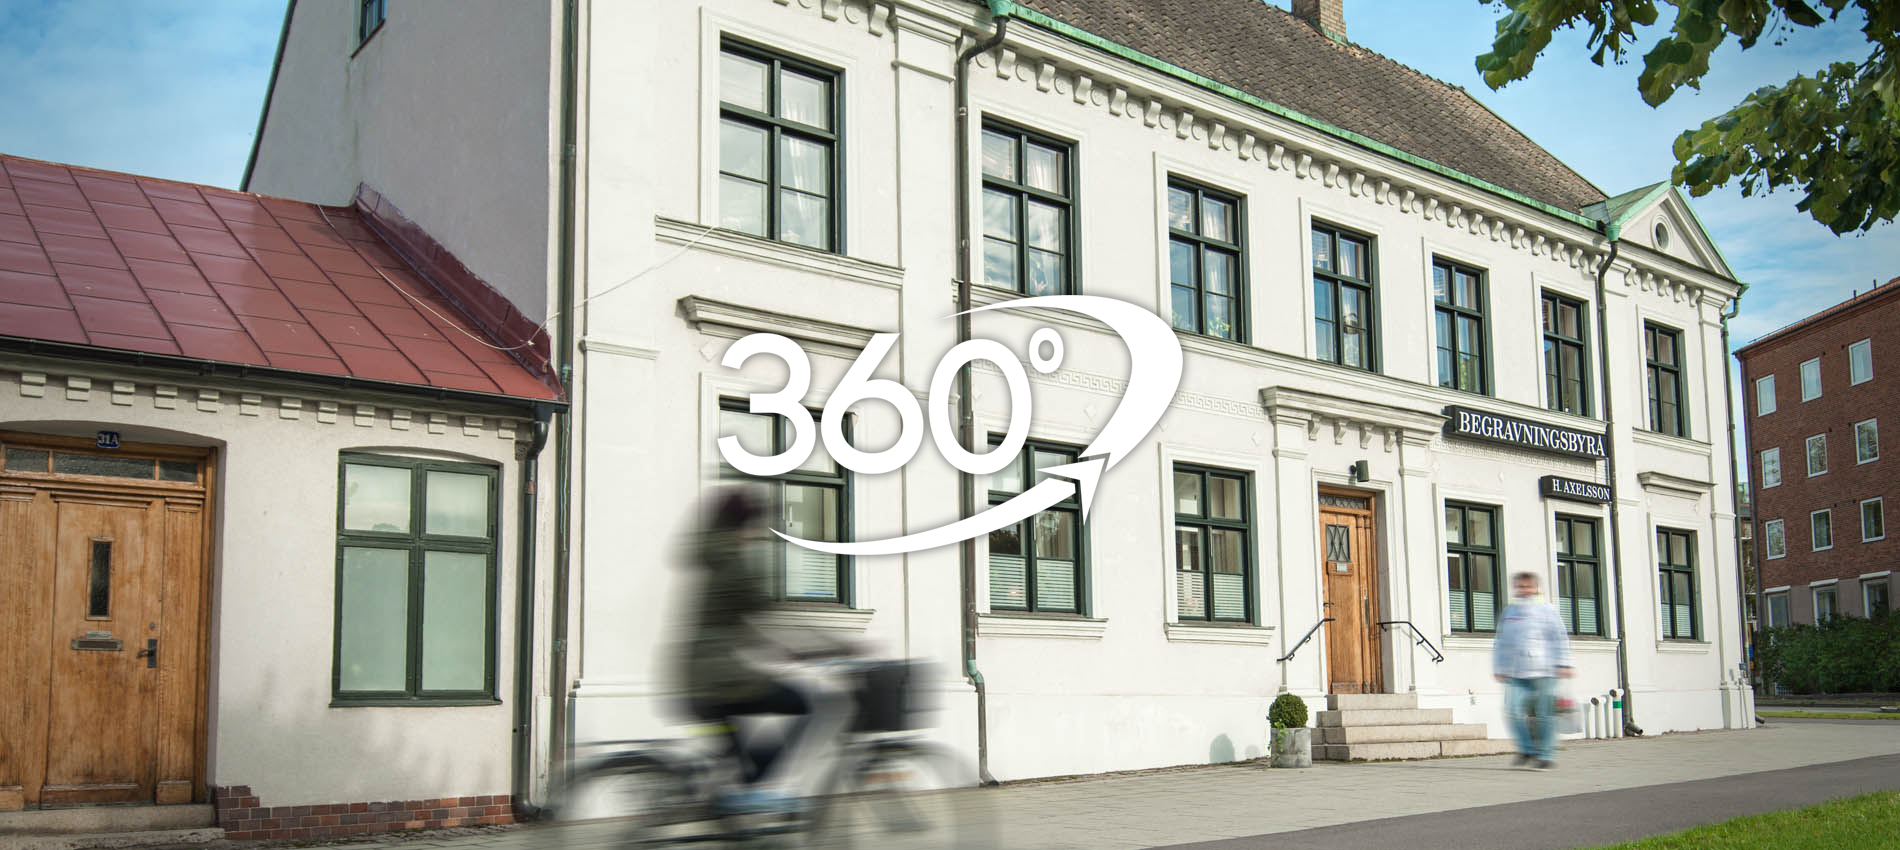 Axelssons Begravningsbyrå Lund - 360° virtuellt besök - Varmt välkommen in